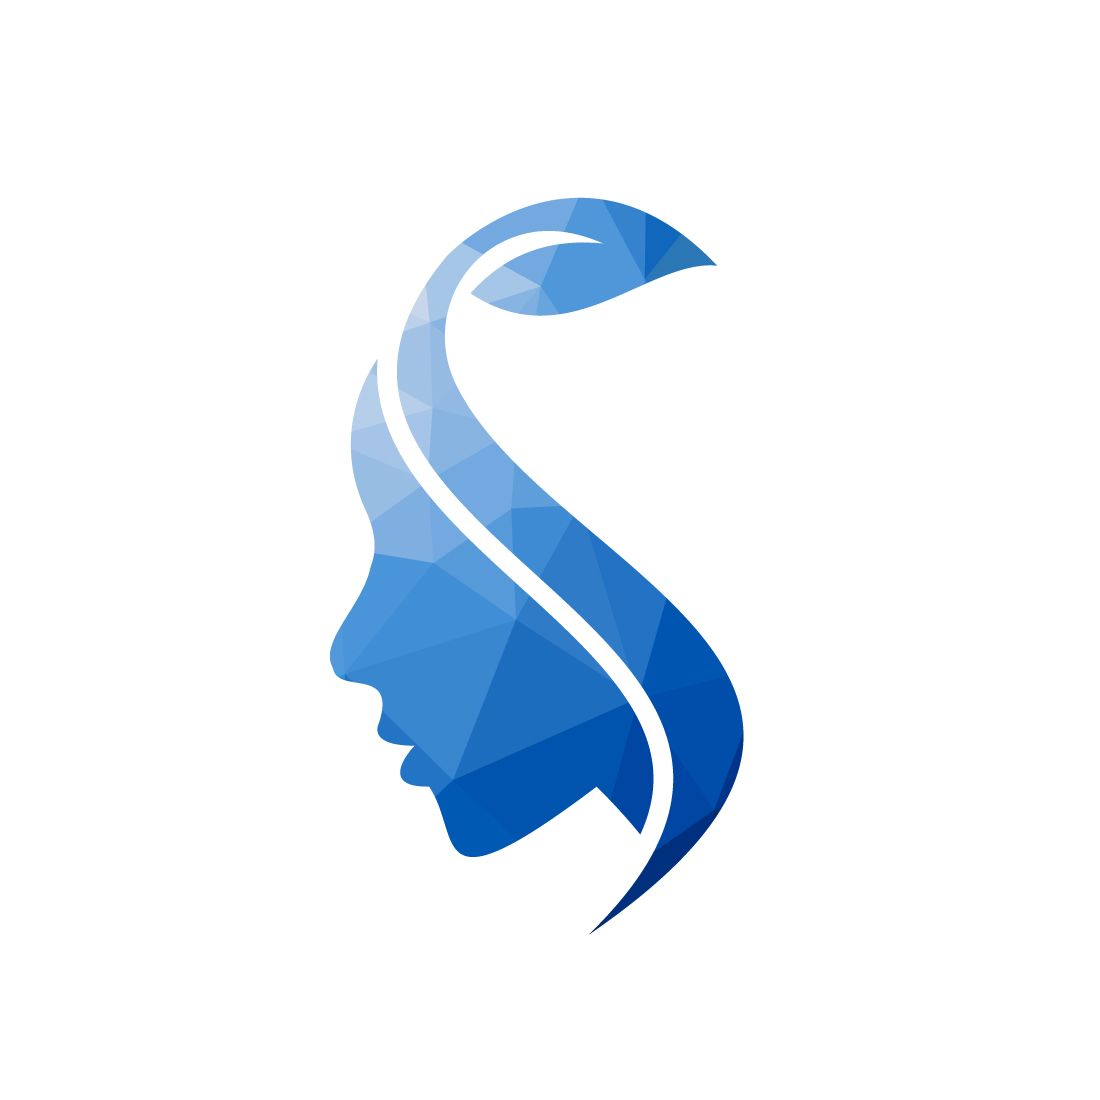 Beauty parlour, Skincare, Salon, Spa, Dermatology Clinic Flower Logo Design Vector design concept preview image.